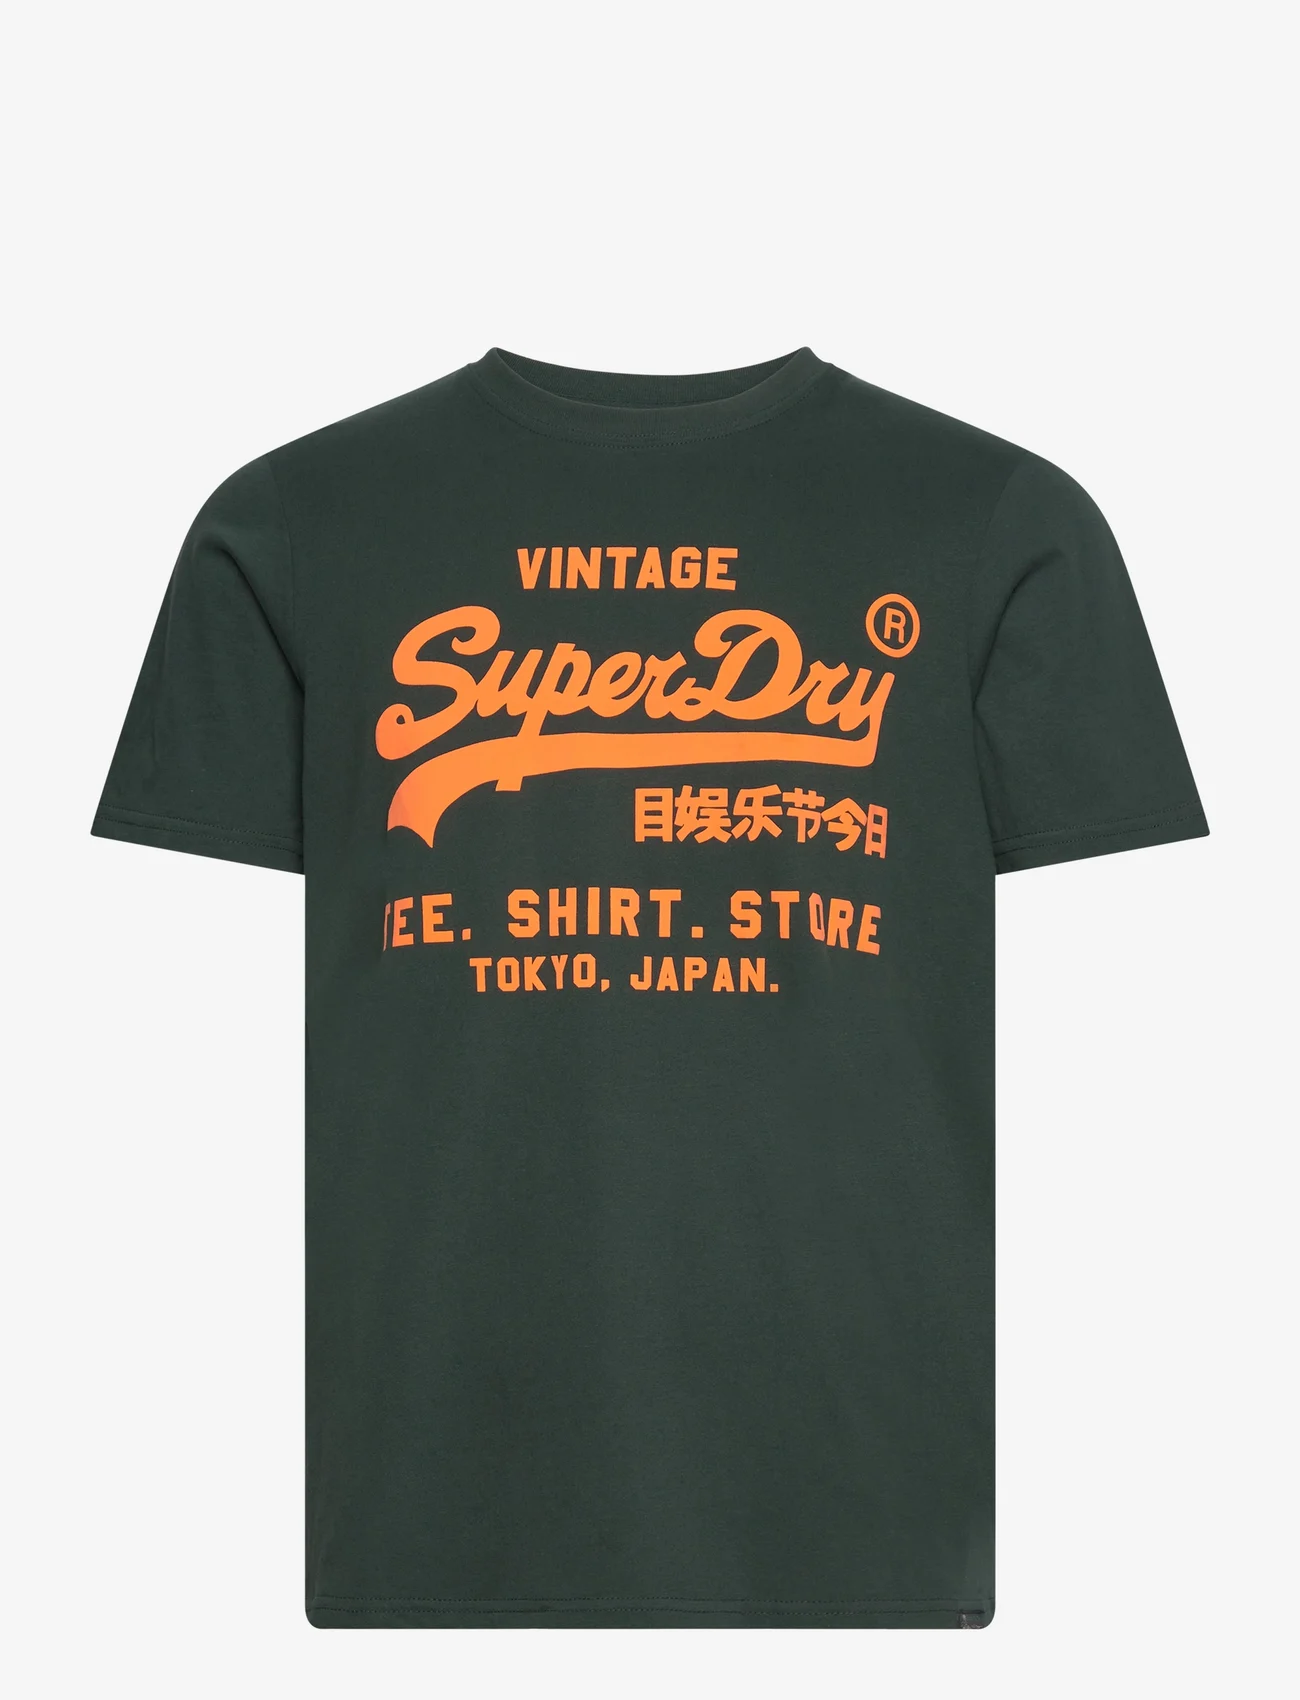 Superdry - NEON VL T SHIRT - kortärmade t-shirts - enamel green - 0